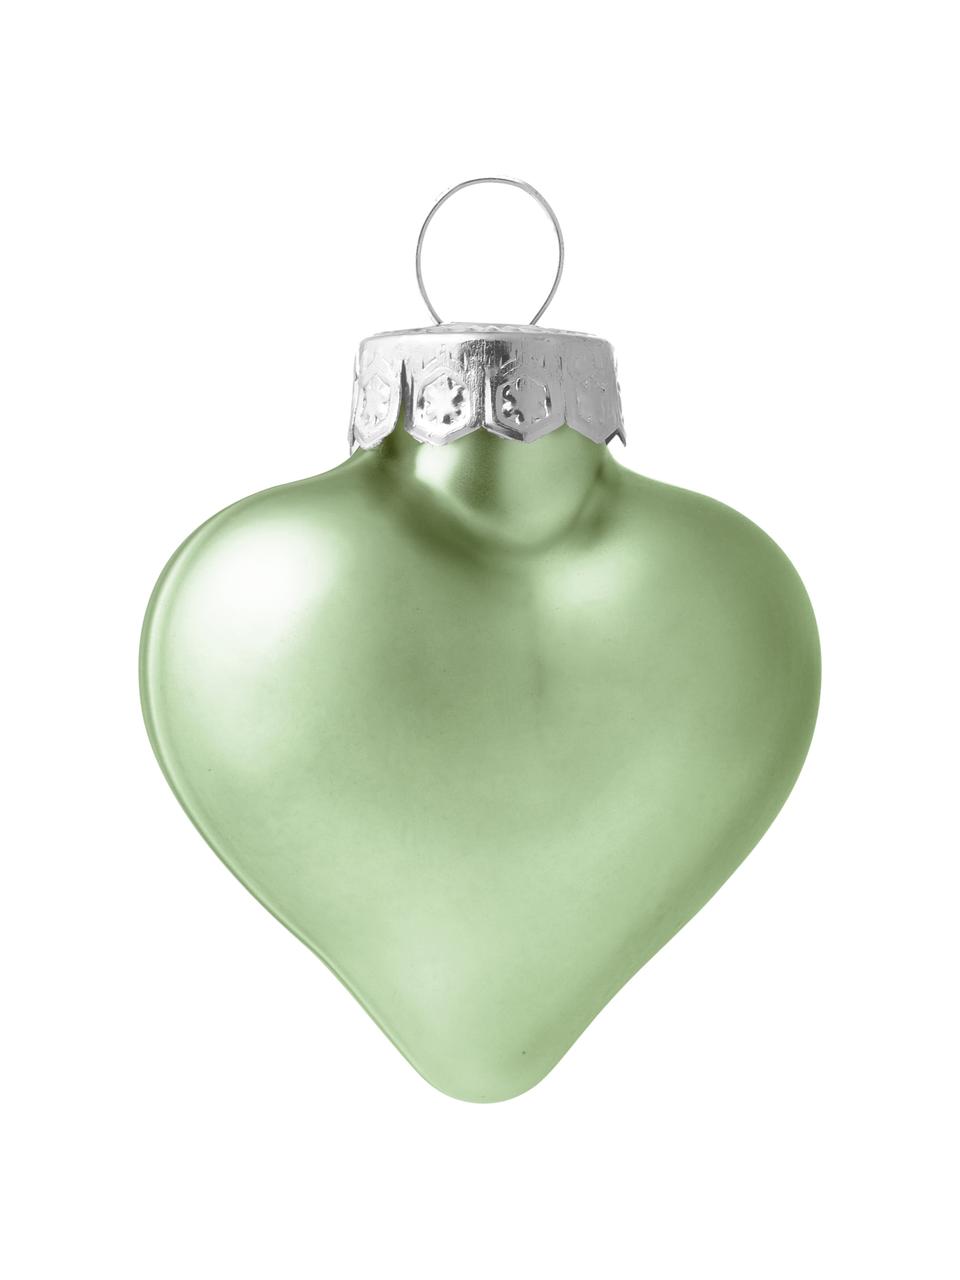 Komplet mini ozdób choinkowych Alabaster, 12 elem., Szałwiowy zielony, S 5 x W 4 cm